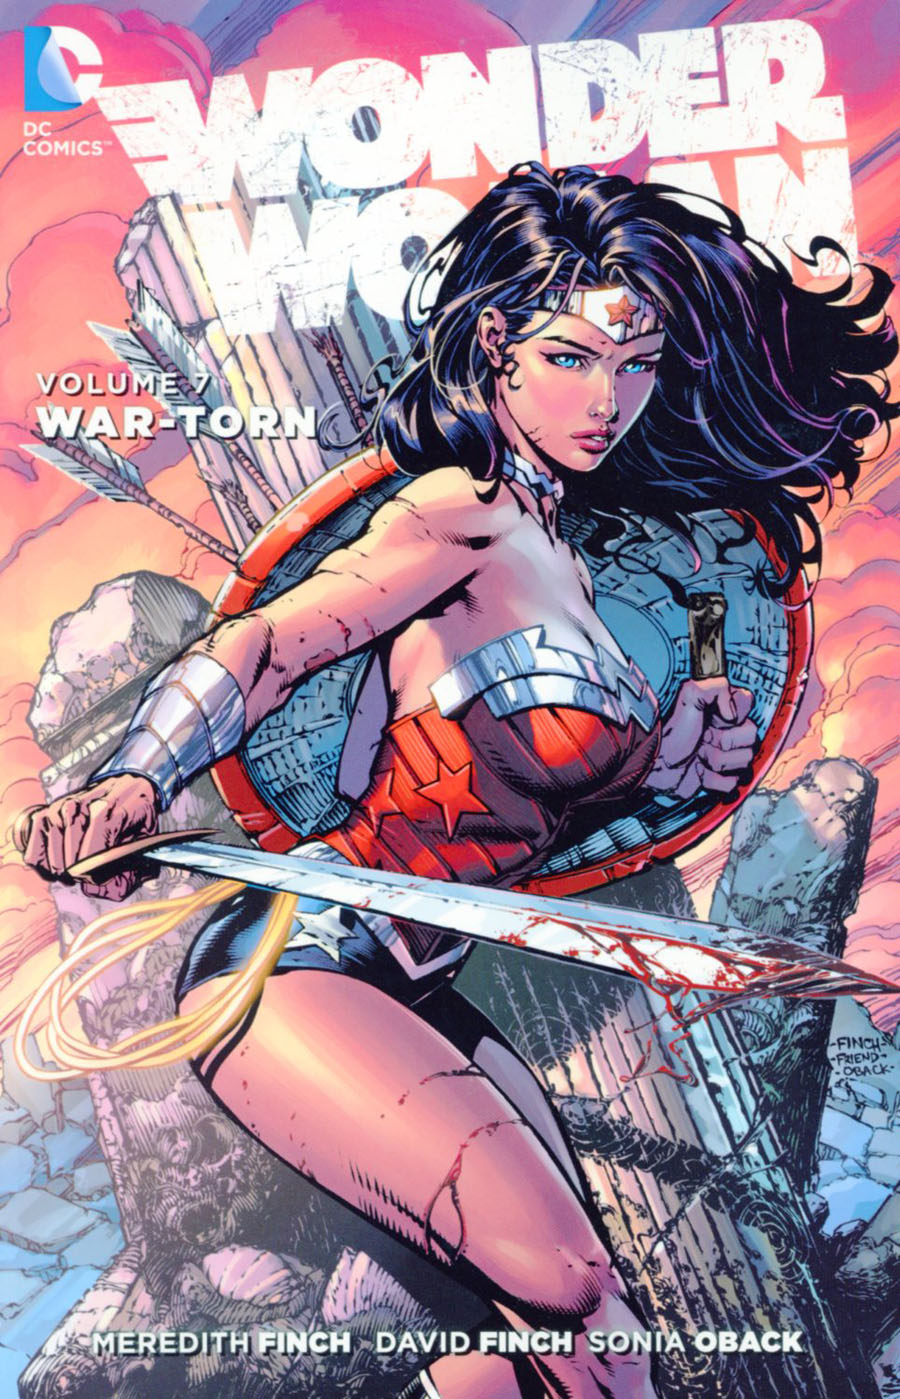 Wonder Woman (New 52) Vol 7 War-Torn TP